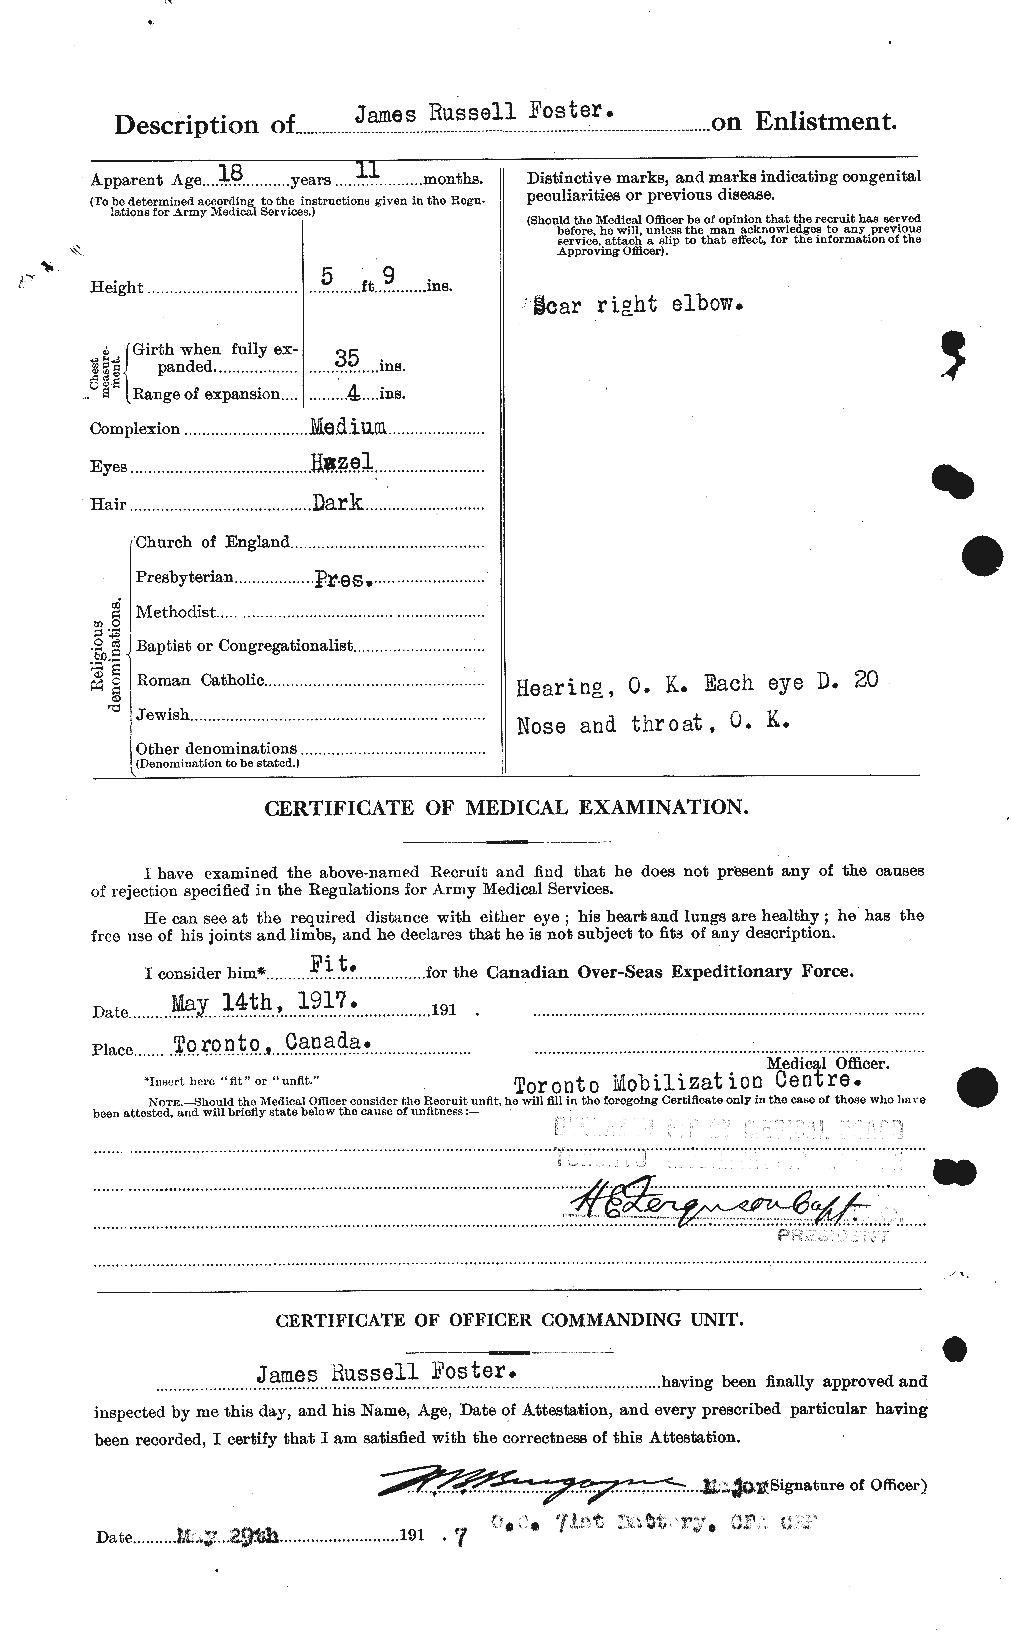 Dossiers du Personnel de la Première Guerre mondiale - CEC 333317b